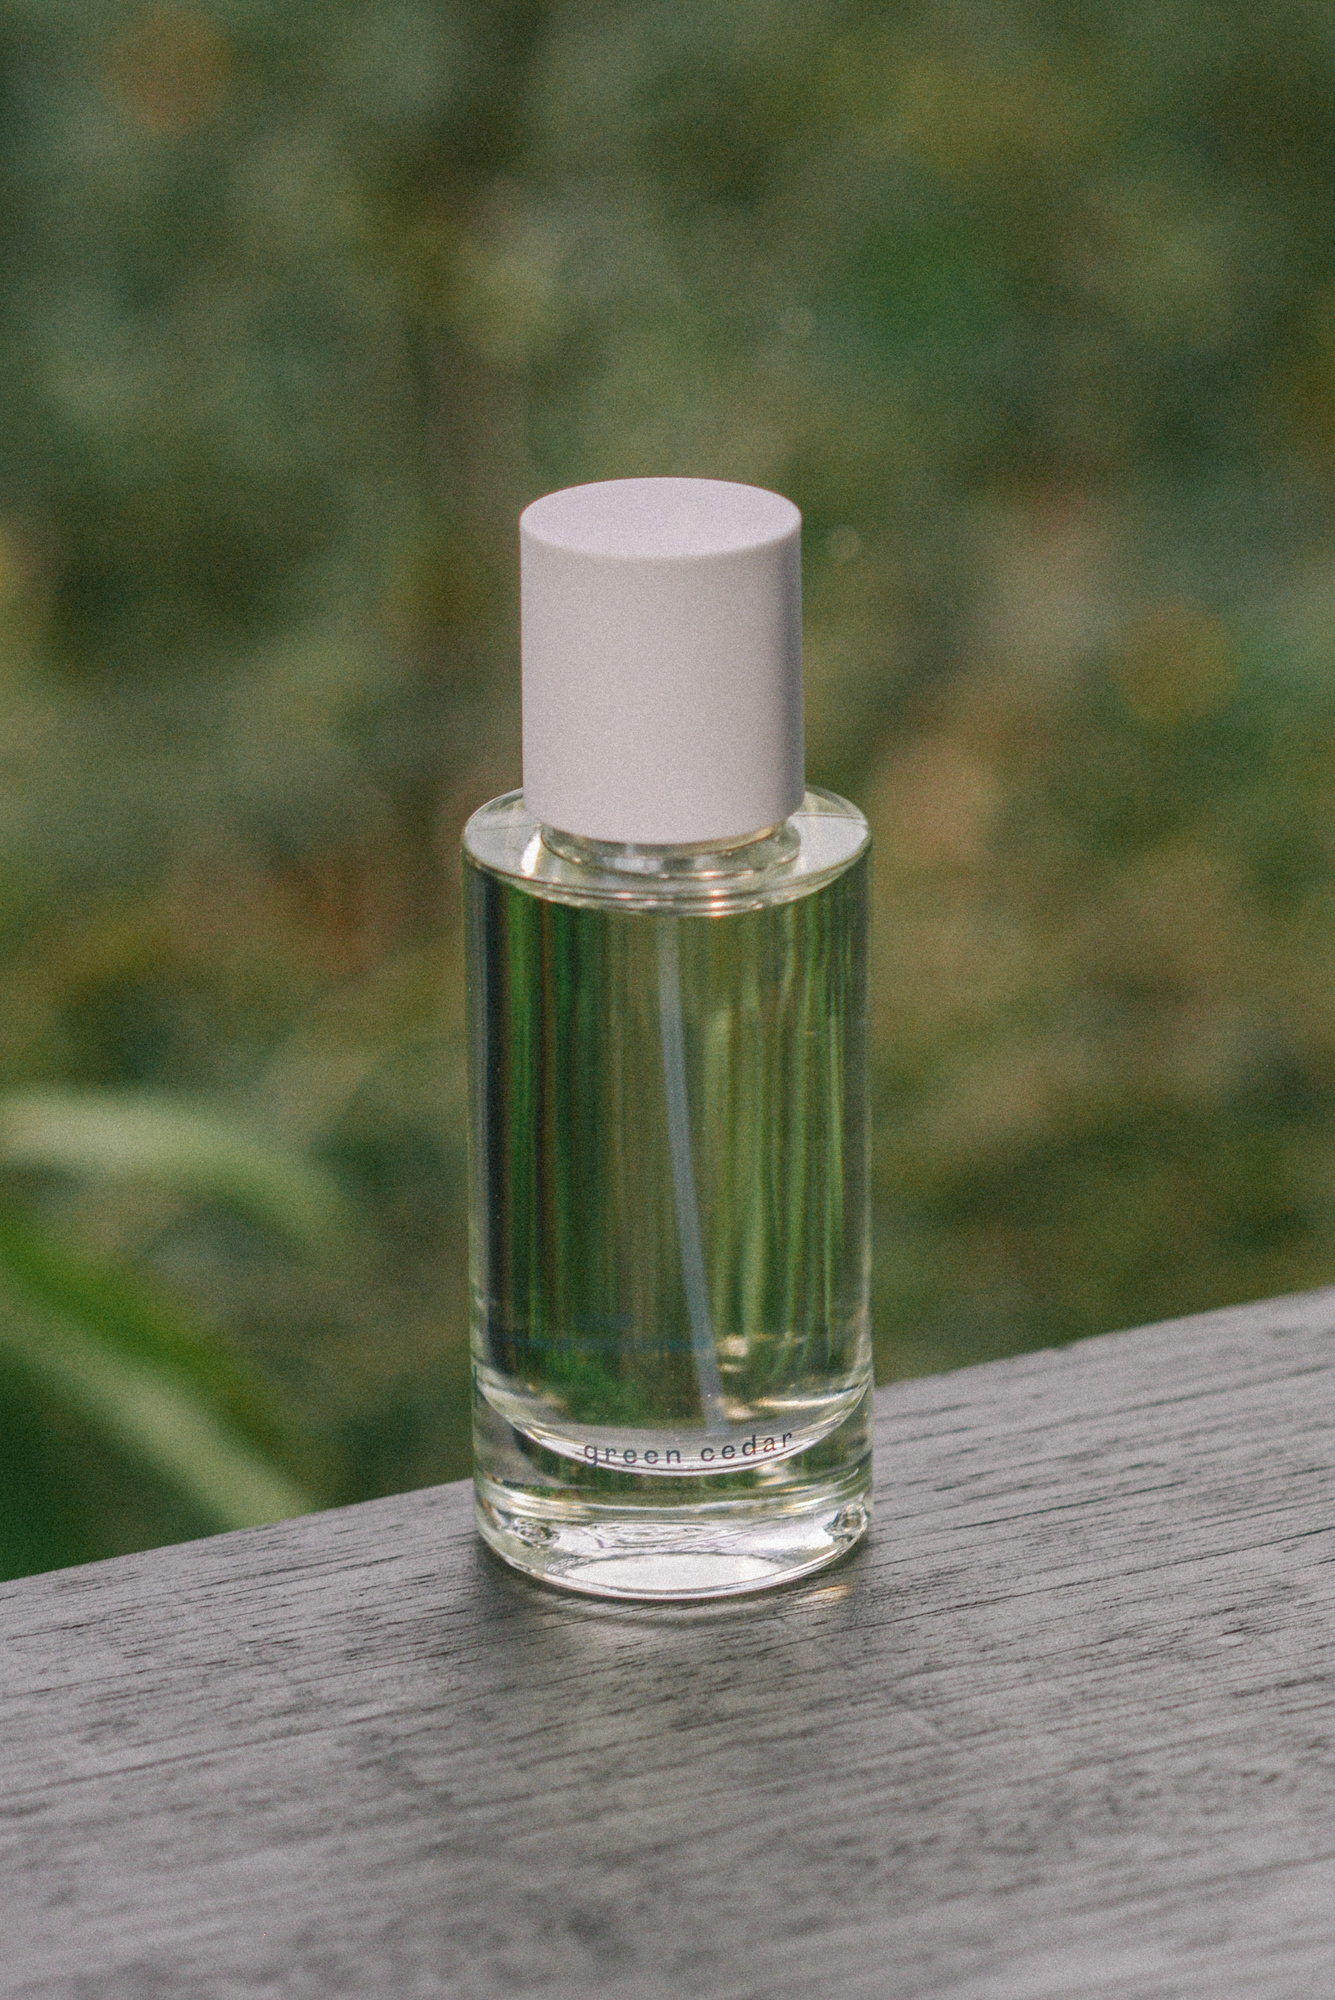 abel fragrance green cedar 15 ml